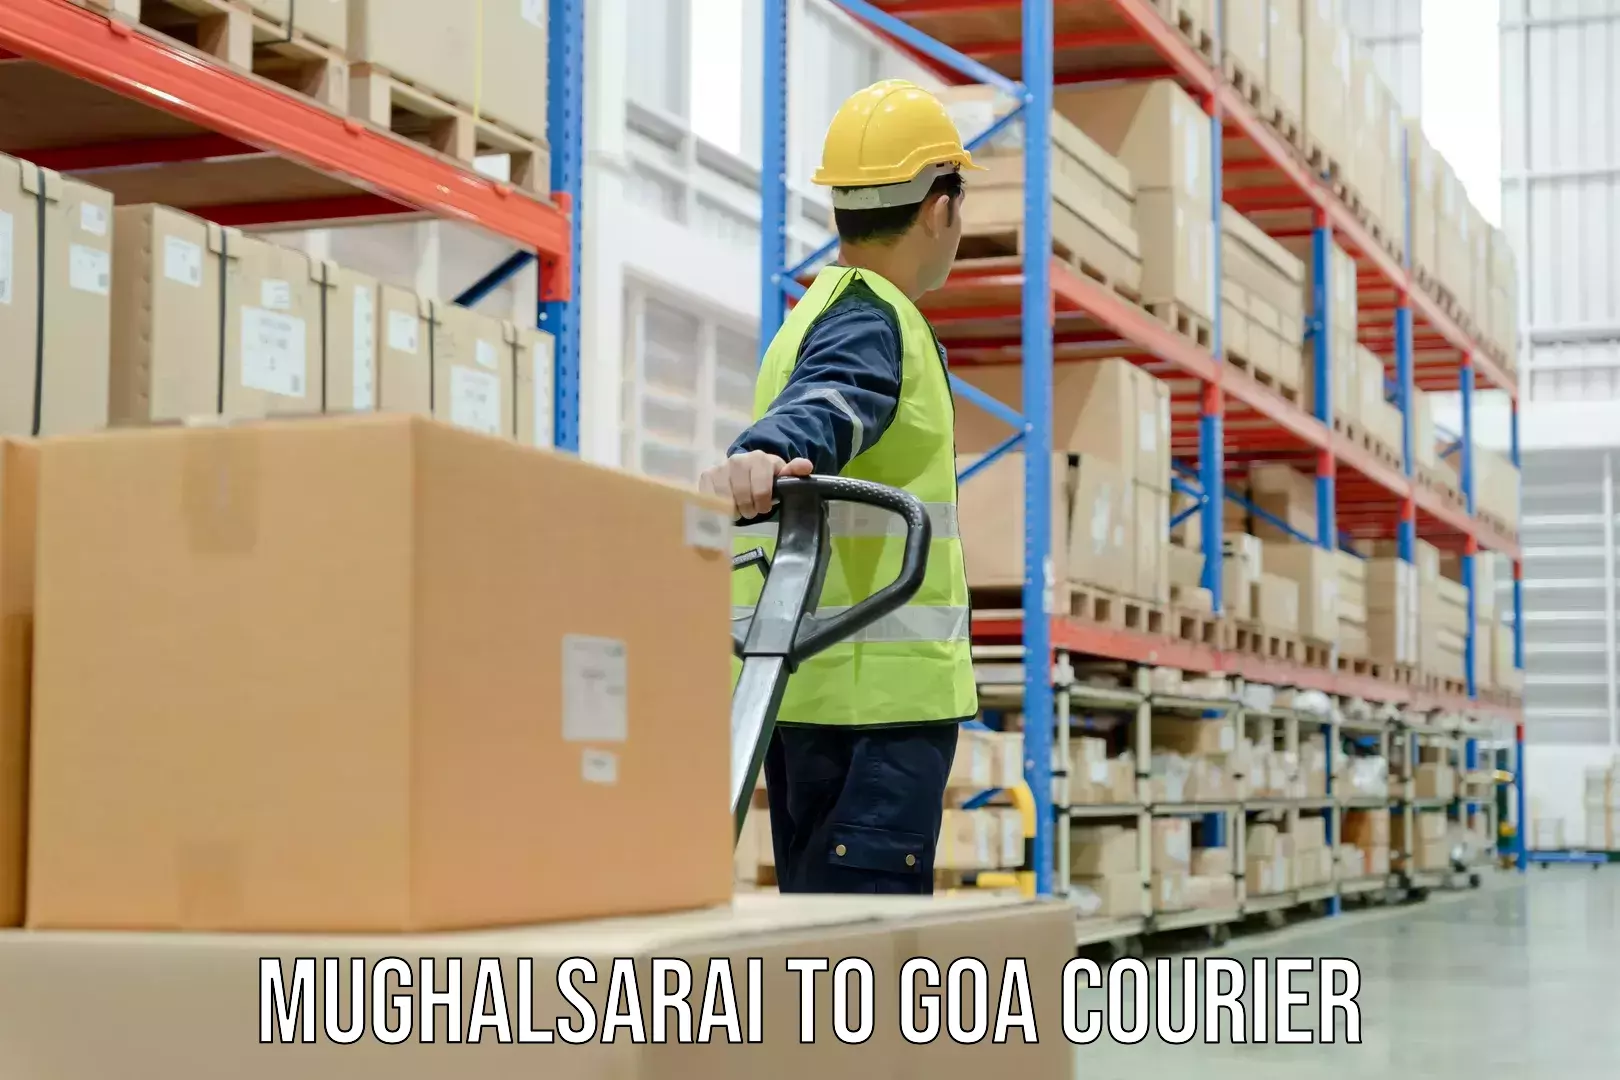 Quality courier services Mughalsarai to Canacona